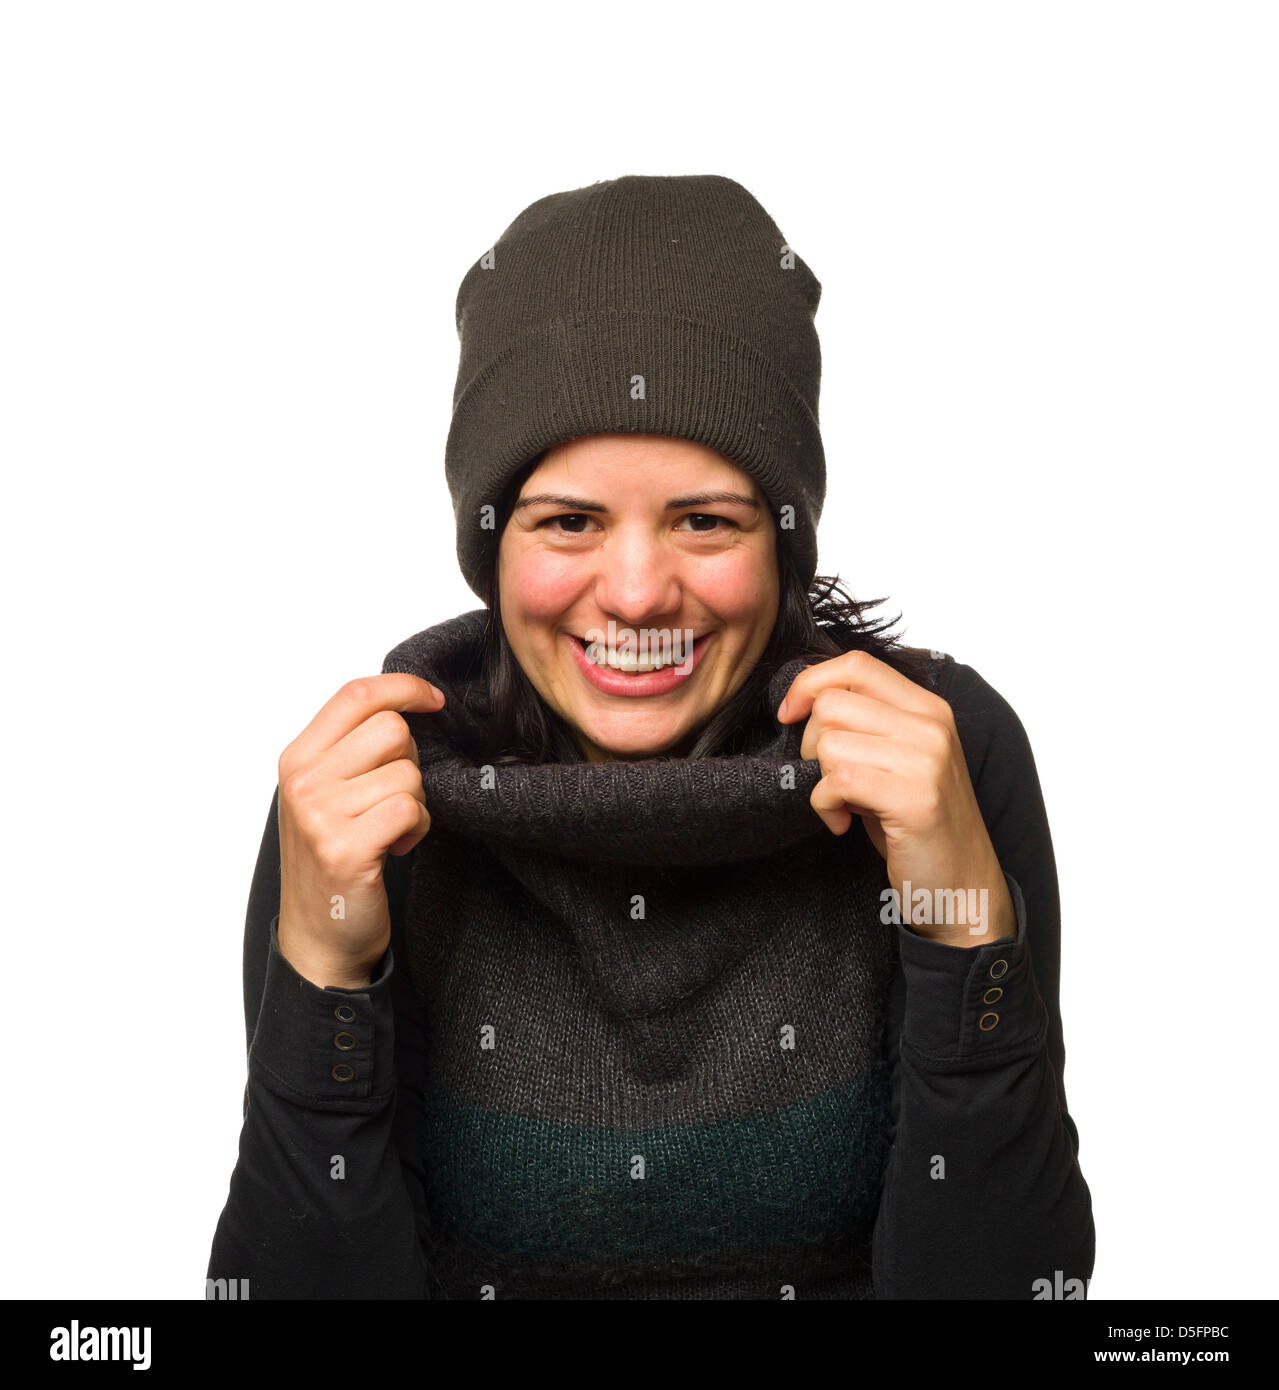 Ritratto di una giovane donna che indossa abiti caldi e sorridente Foto Stock